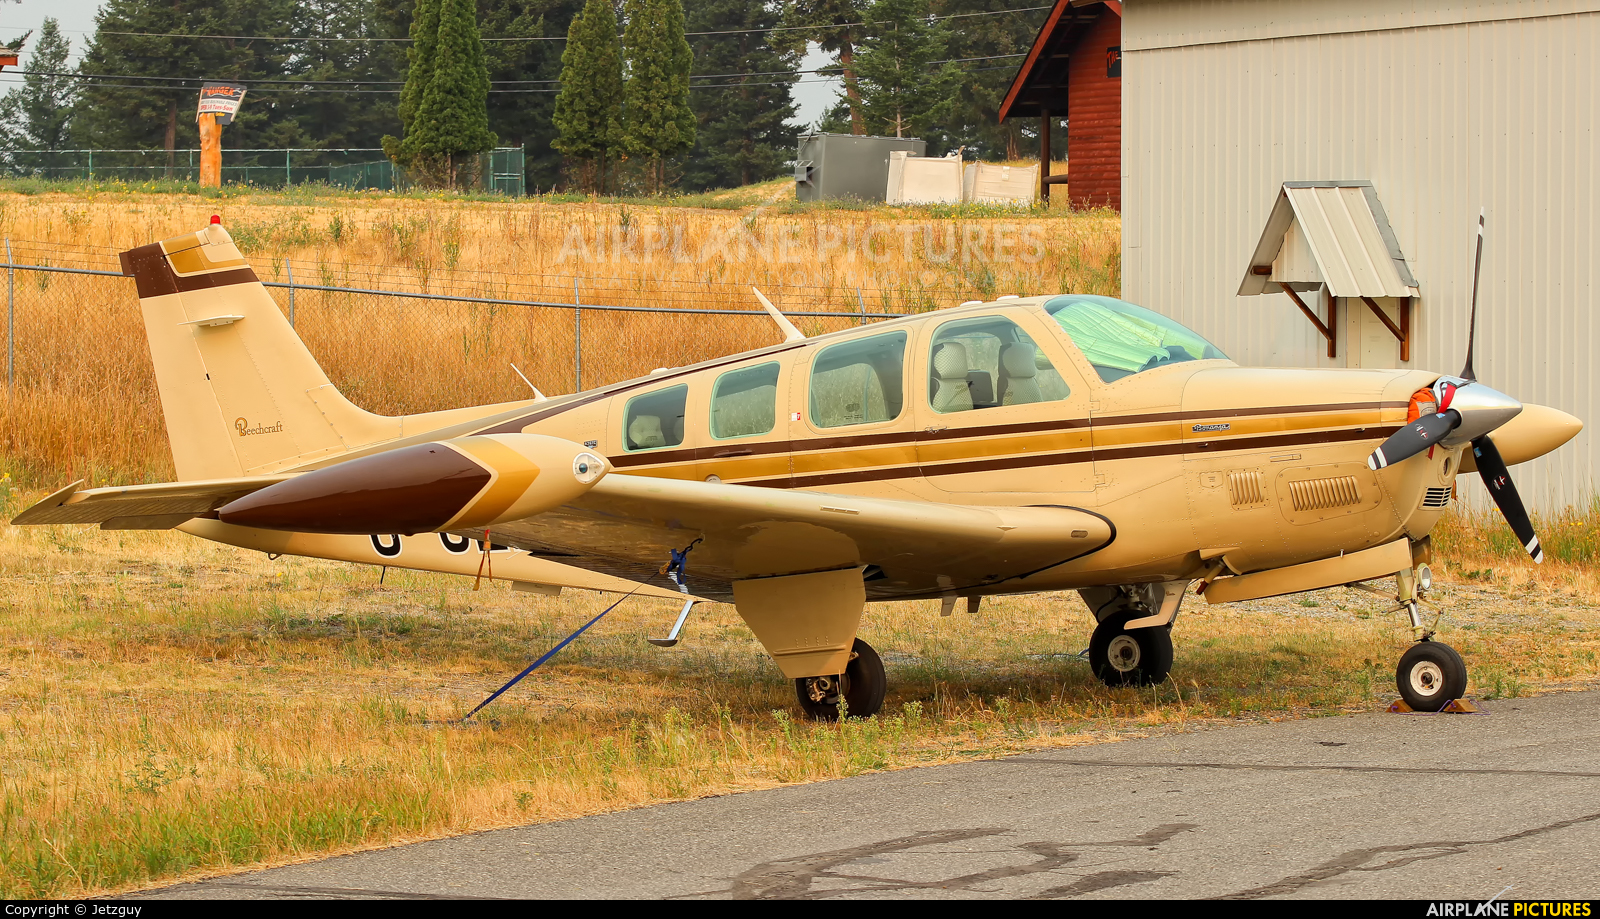 Private C-GLES aircraft at 108 Mile Ranch, BC